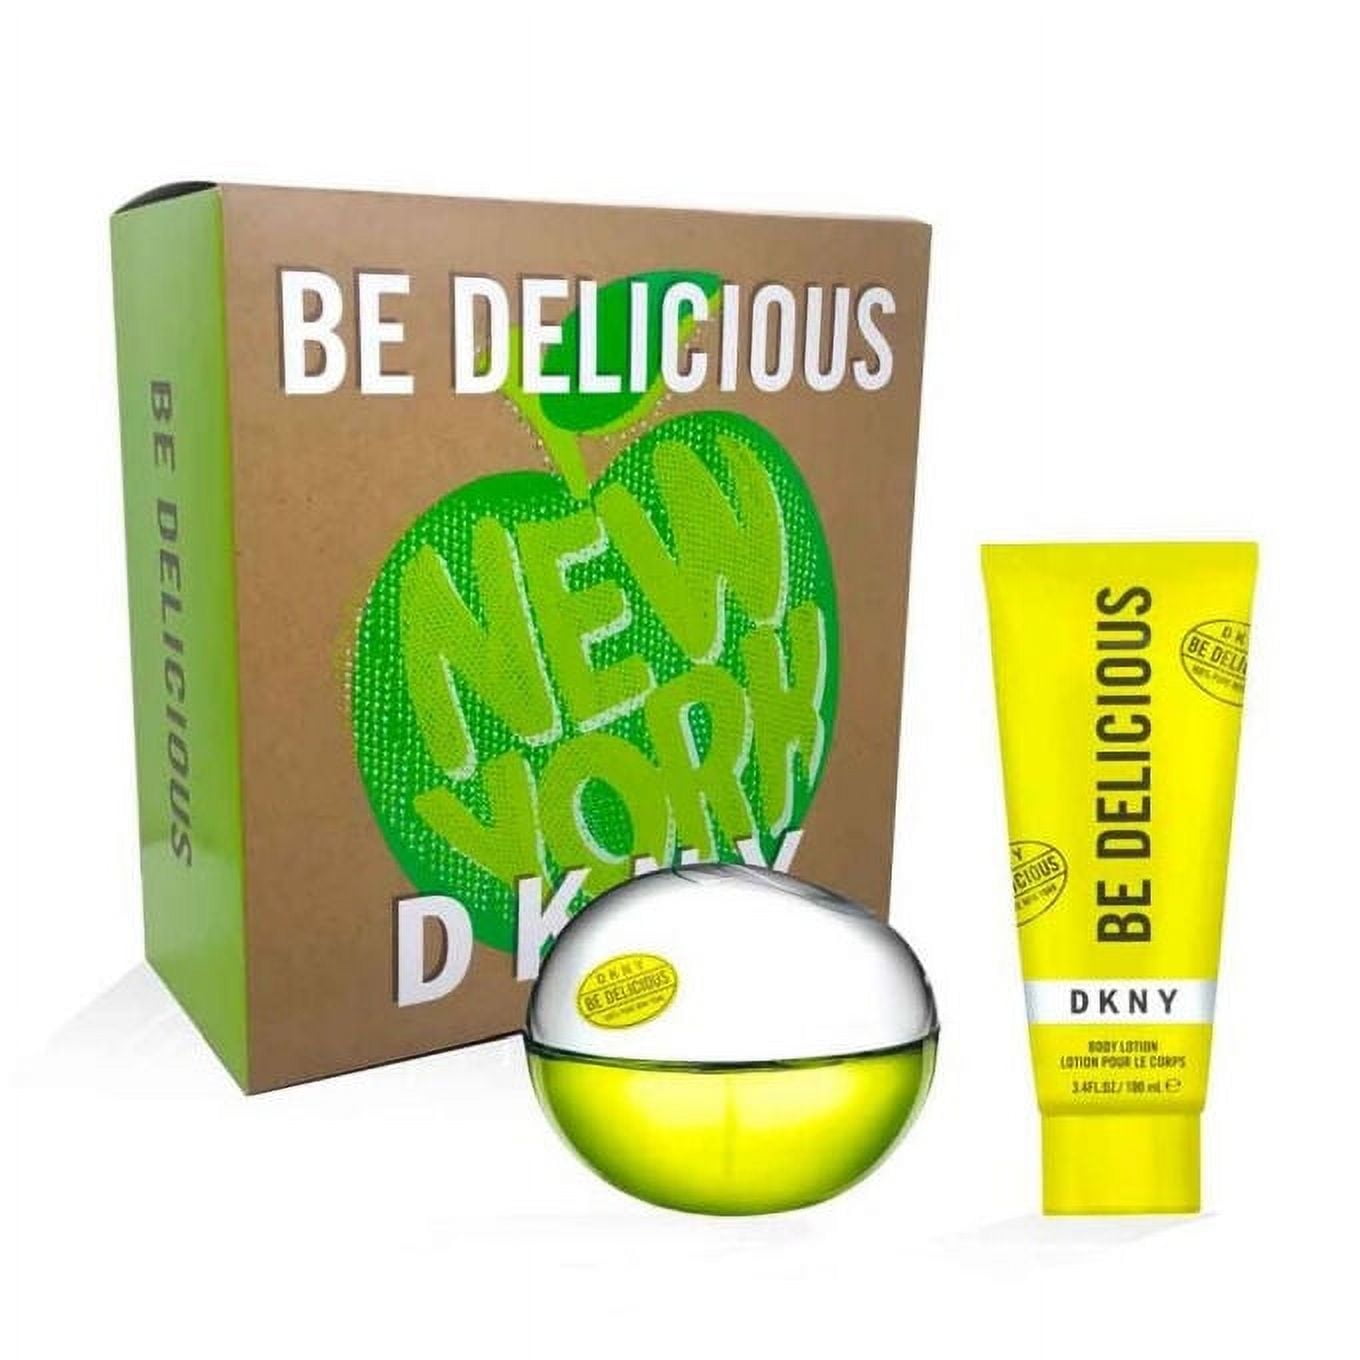 Donna Karan DKNY BE DELICIOUS perfume 3pc Gift Set 3.4oz 100ml Edp +mini  +mousse | eBay